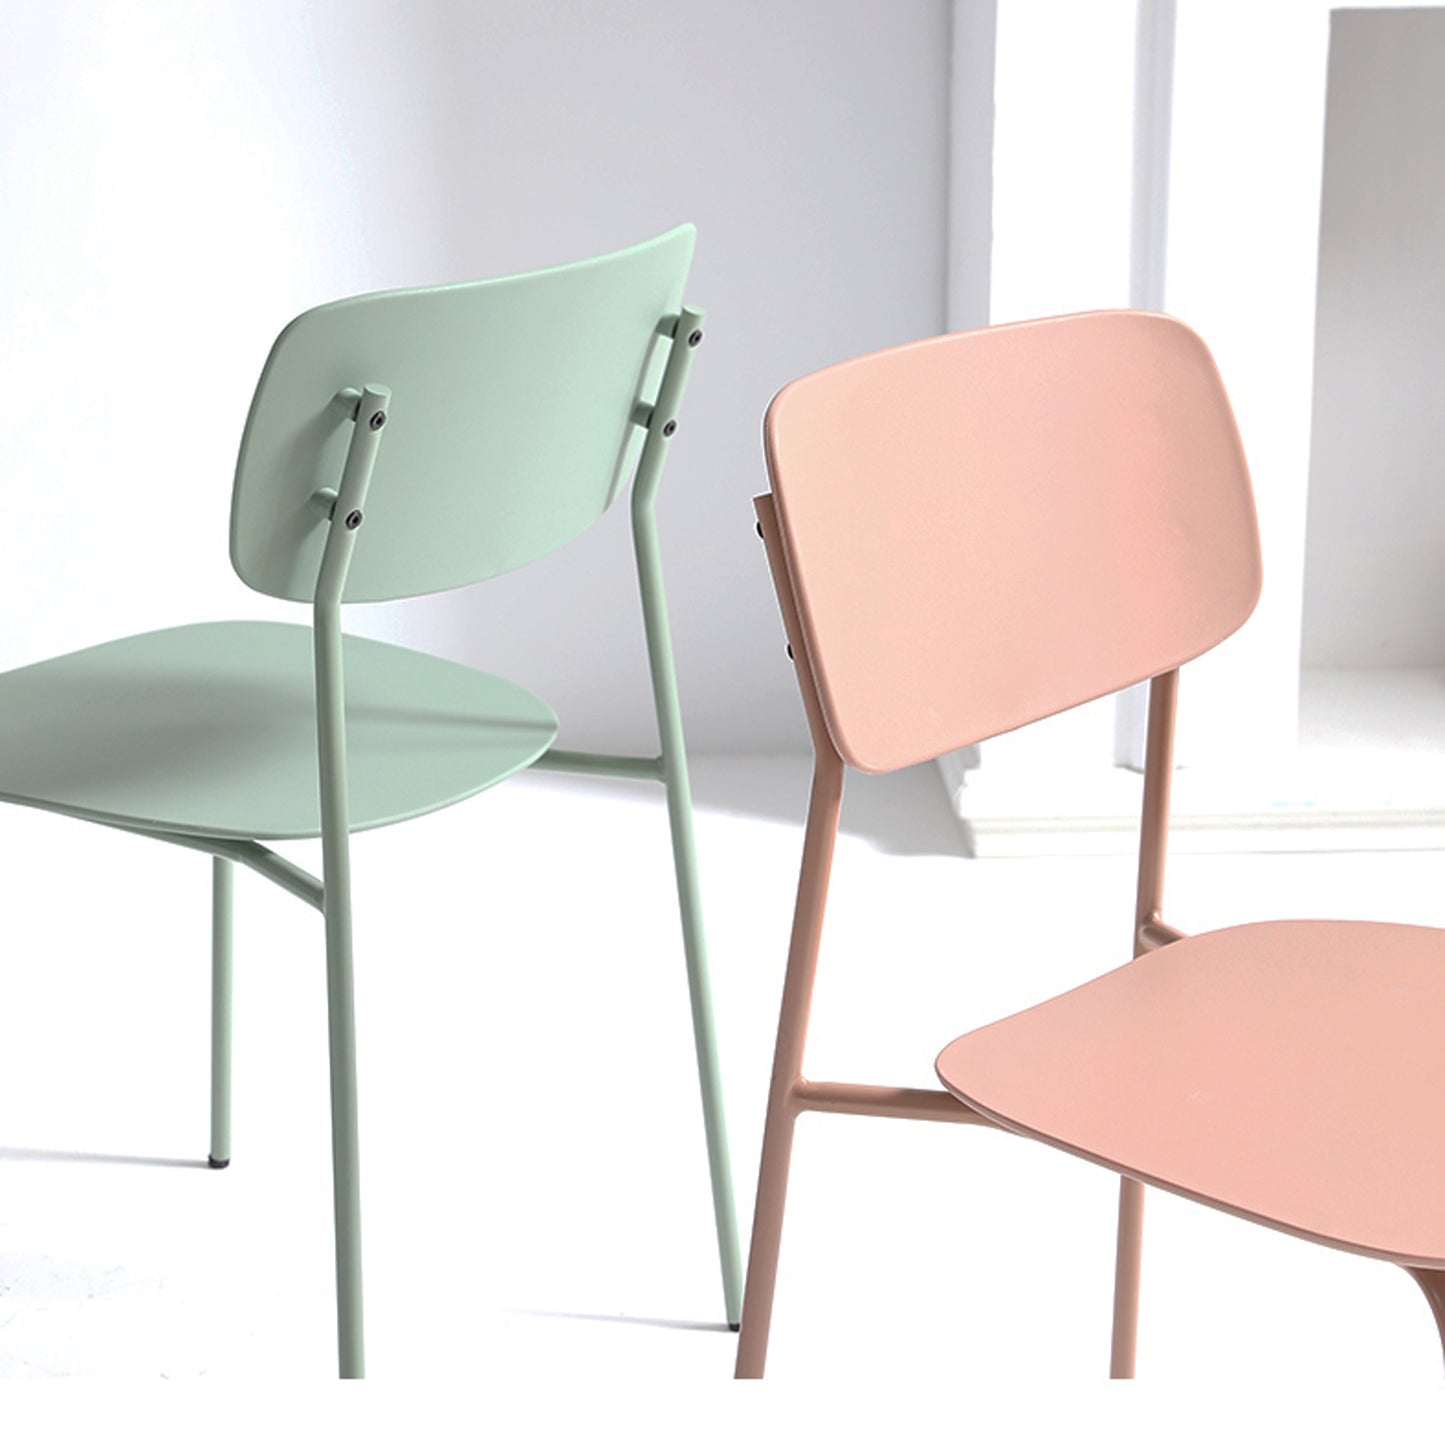 Lot de 4 chaises scandinaves au design minimaliste coloris vert très tendance